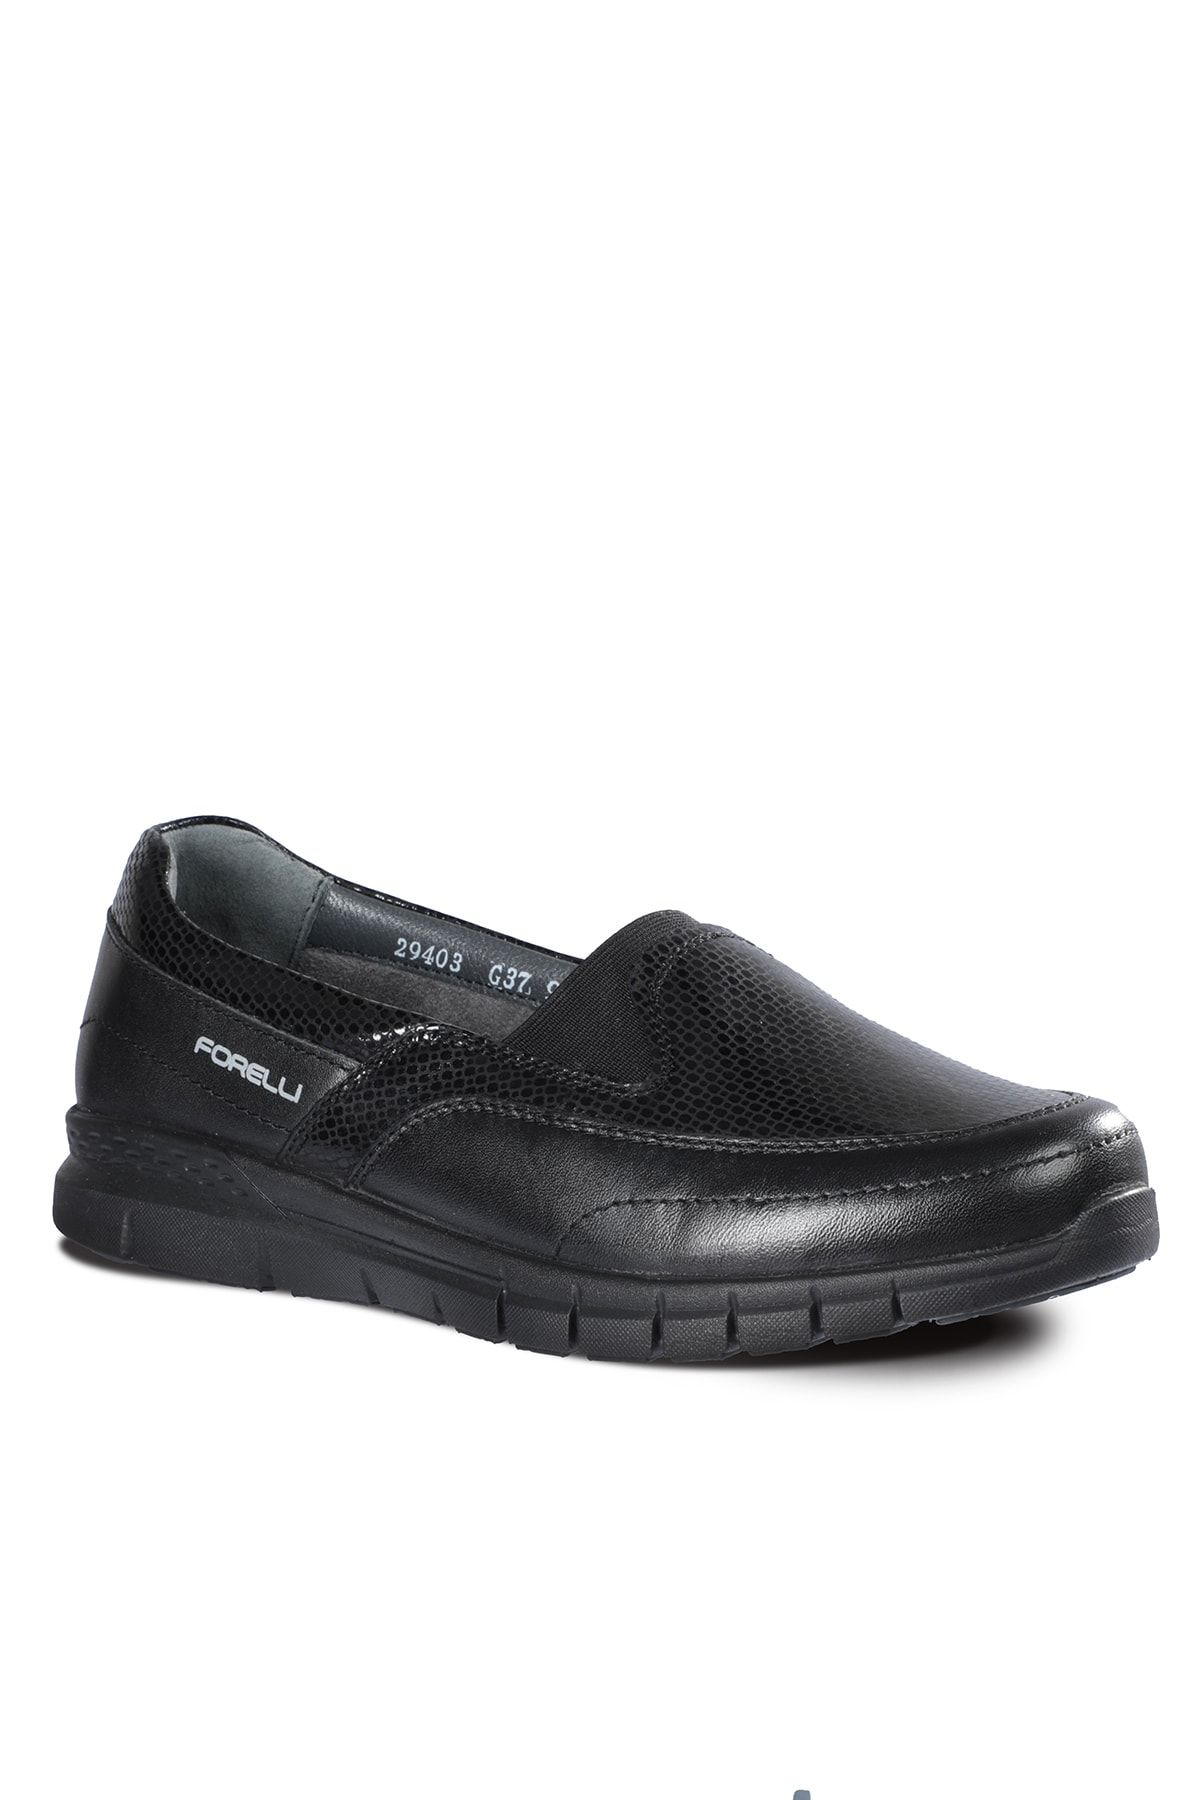 Forelli EFES-G Comfort Kadın Ayakkabı Siyah